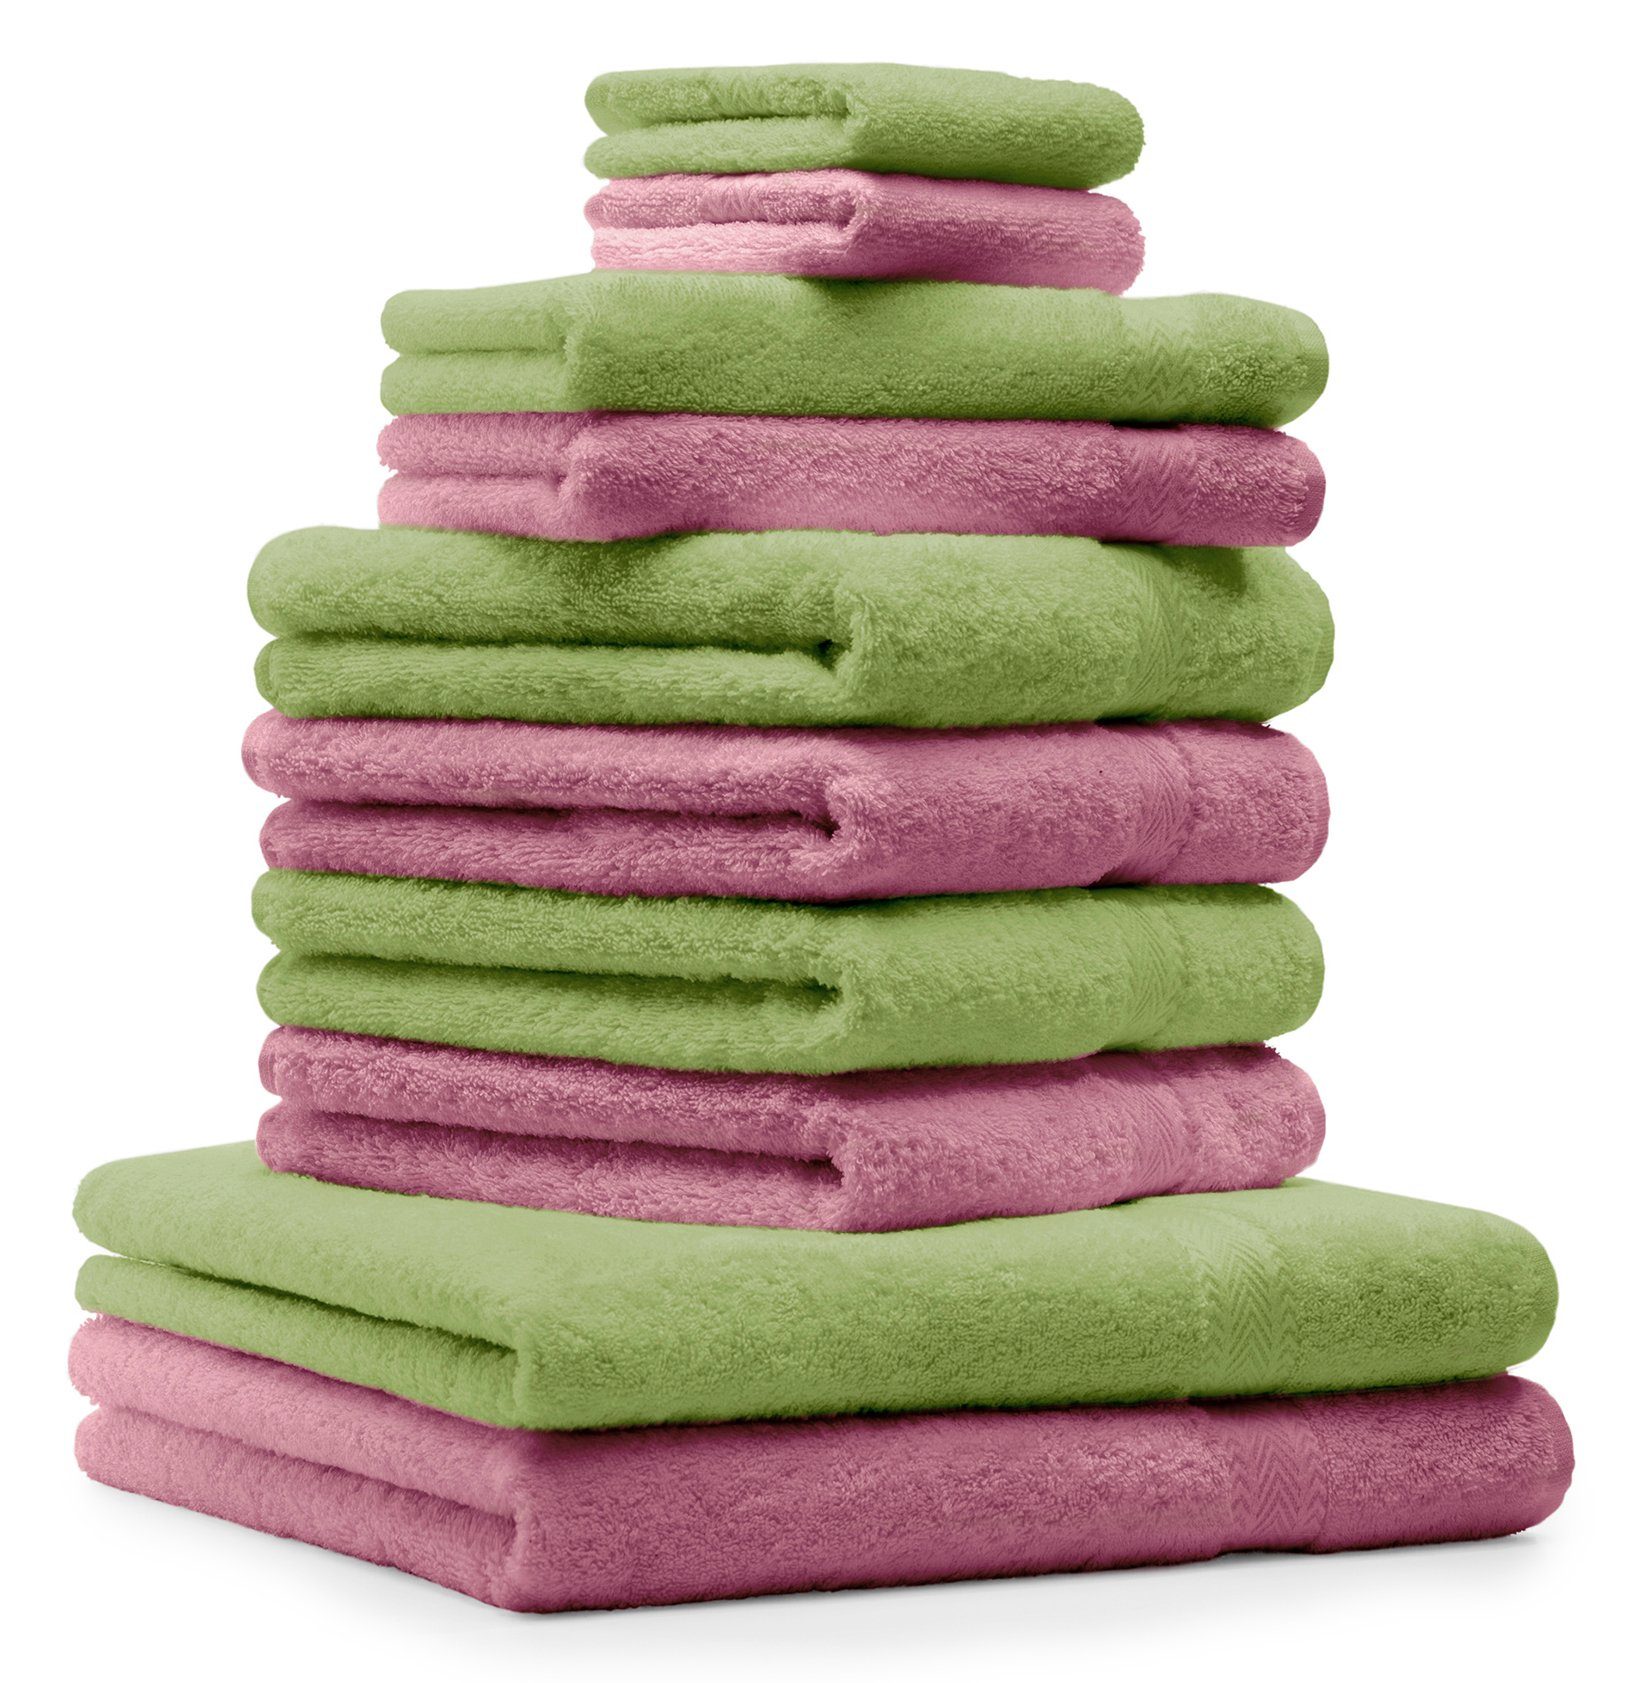 Betz Handtuch Set 10-TLG. Handtuch-Set Premium 100% Baumwolle 2 Duschtücher 4 Handtücher 2 Gästetücher 2 Waschhandschuhe Farbe Apfel Grün & Altrosa, 100% Baumwolle, (Set, 10-tlg)